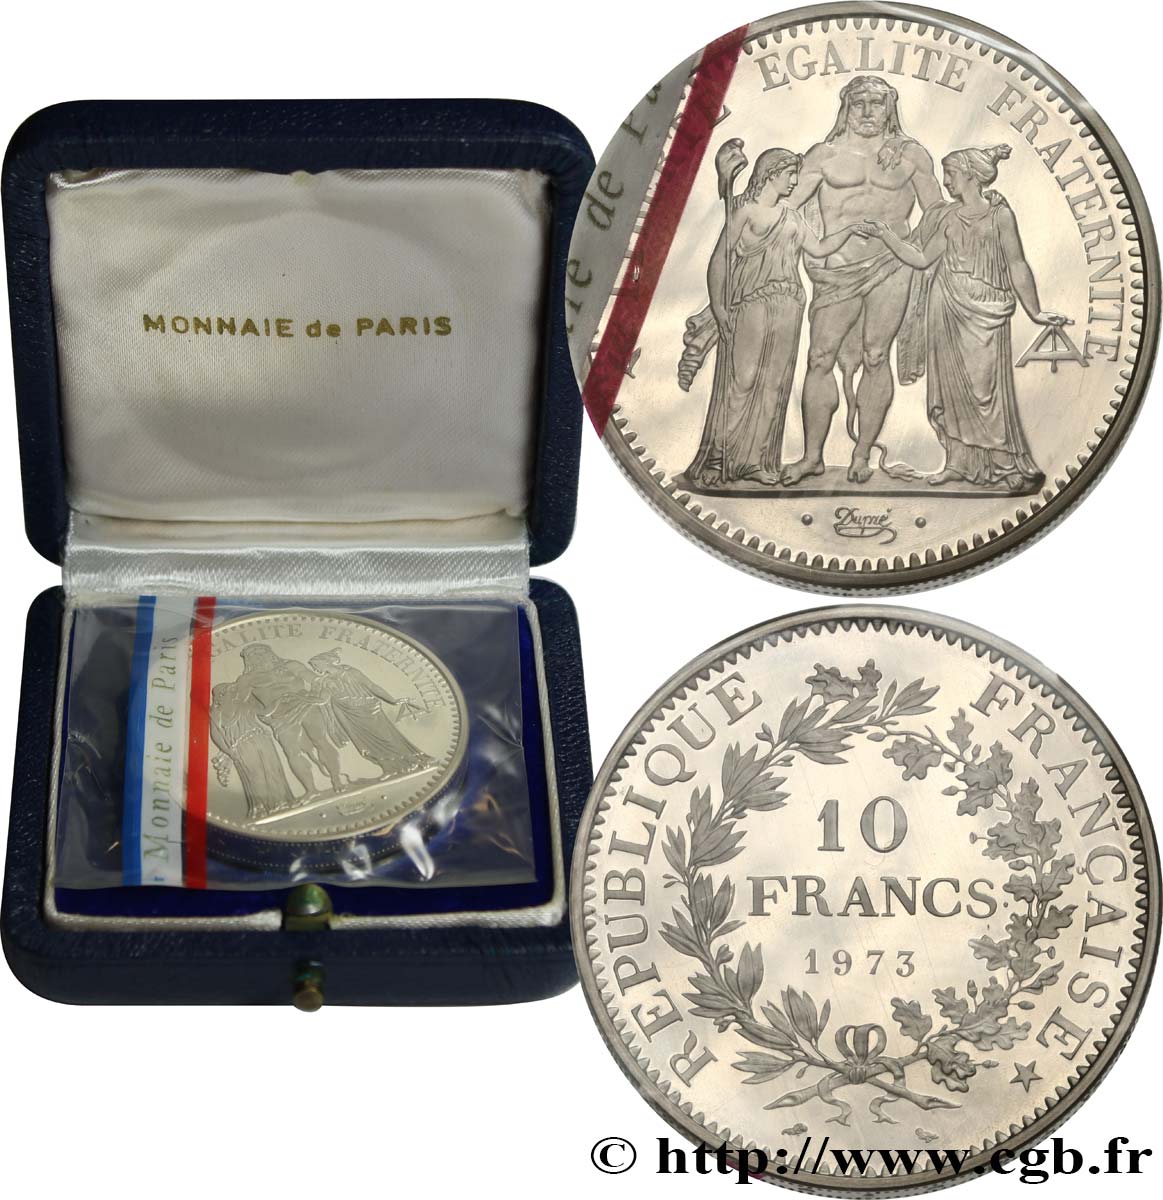 Piéfort argent de 10 francs Hercule 1973 Pessac F.364/12P MS 